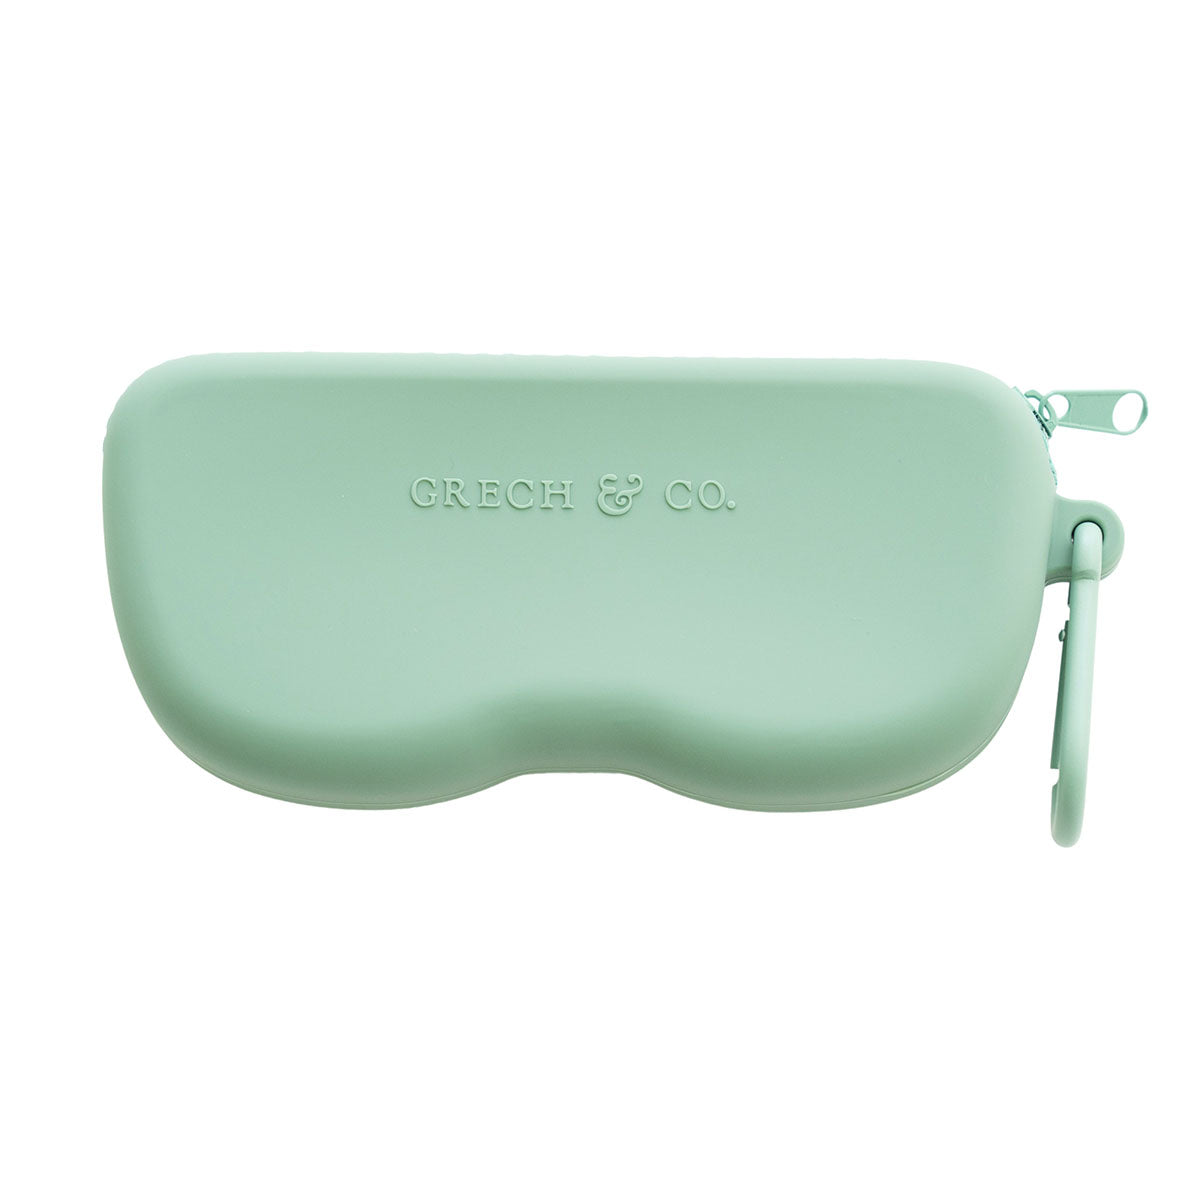 De Grech & co. case voor zonnebril fern, for mommy and me is een schitterende beschermhoes voor zonnebrillen, ontworpen om je favoriete zonnebril veilig en beschermd te houden tijdens het reizen en opslaan. VanZus